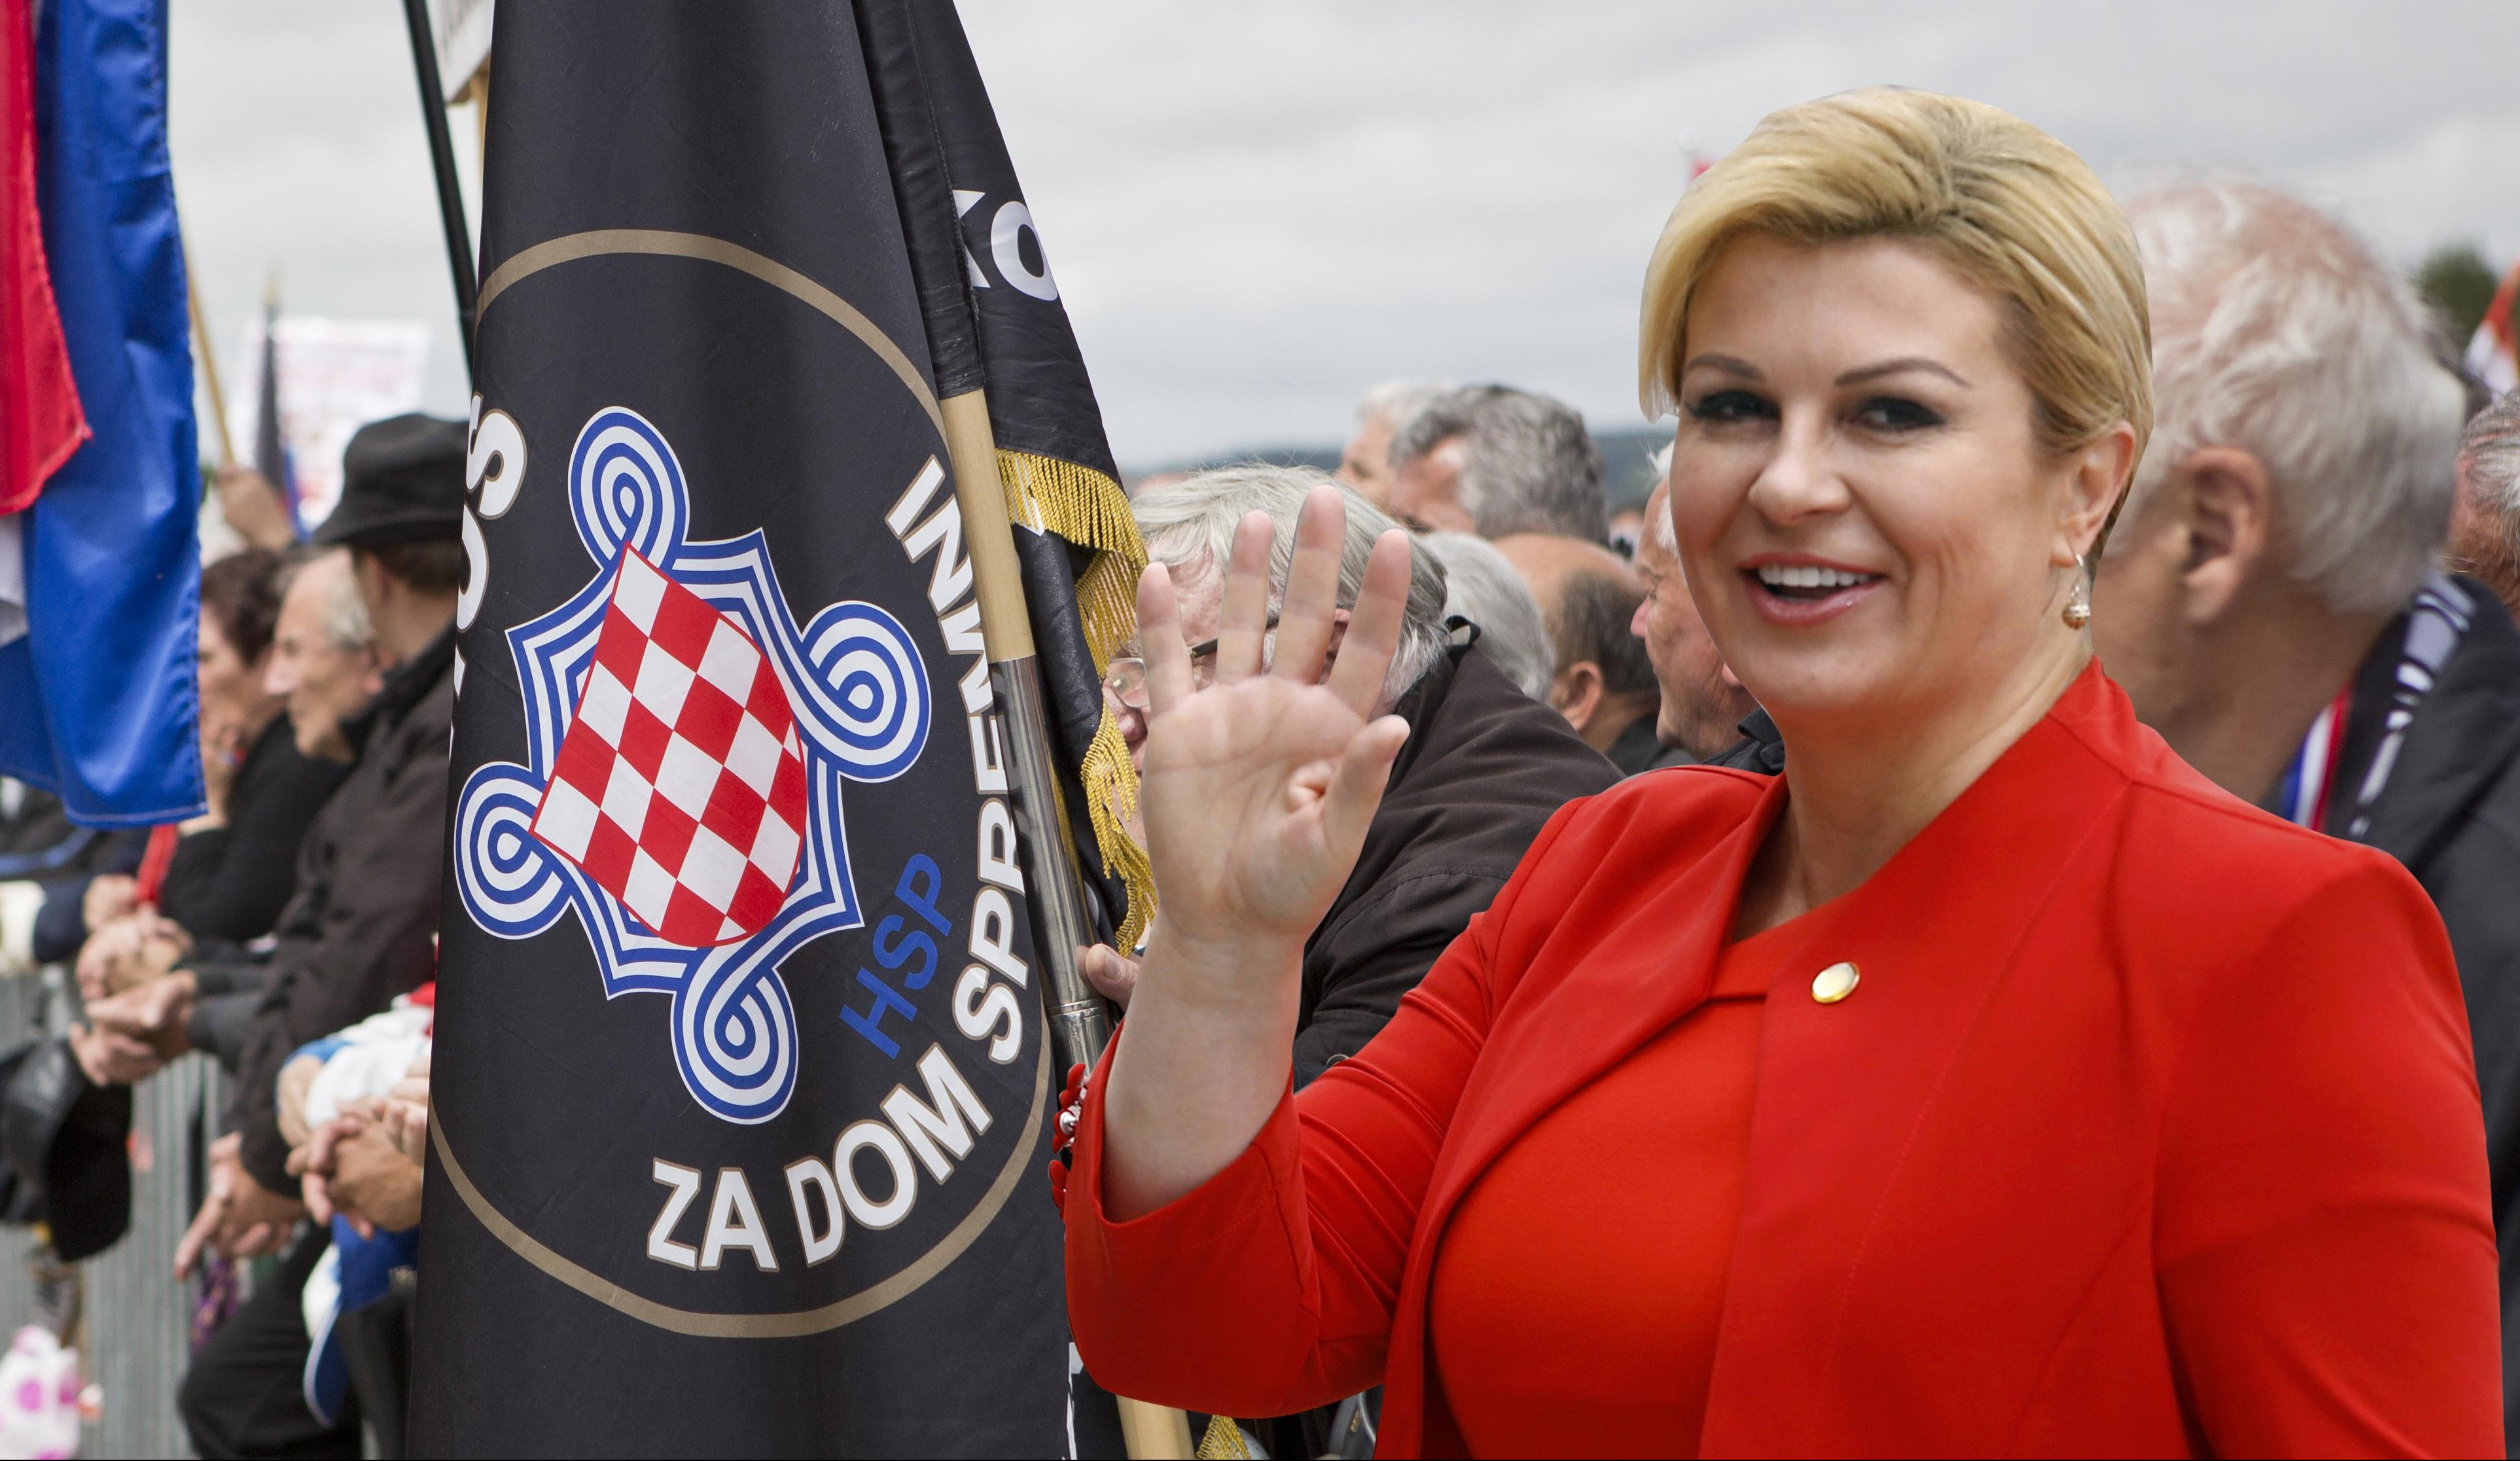 NACI KOLINDA NE MOŽE BEZ FAŠISTA: Predsednica Hrvatske na božićnom prijemu ugostila osuđenog NEONACISTU